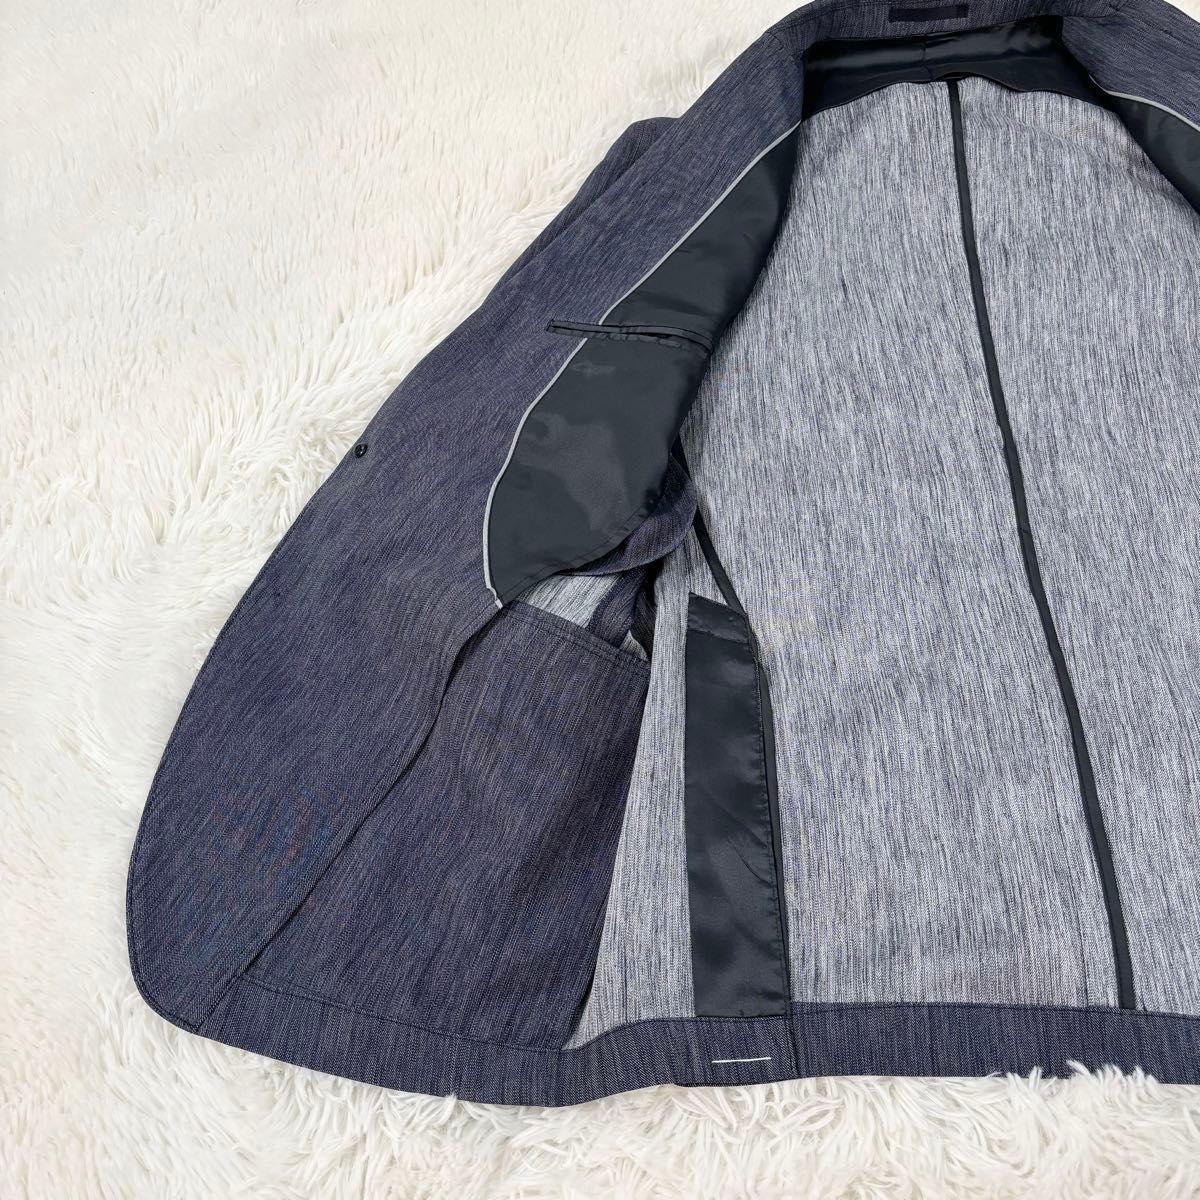 スーツ ストレッチ 洗える 軽量 セットアップ メンズスーツ Lサイズ 青 フォーマルスーツ ベーシックスタイル ネイビー